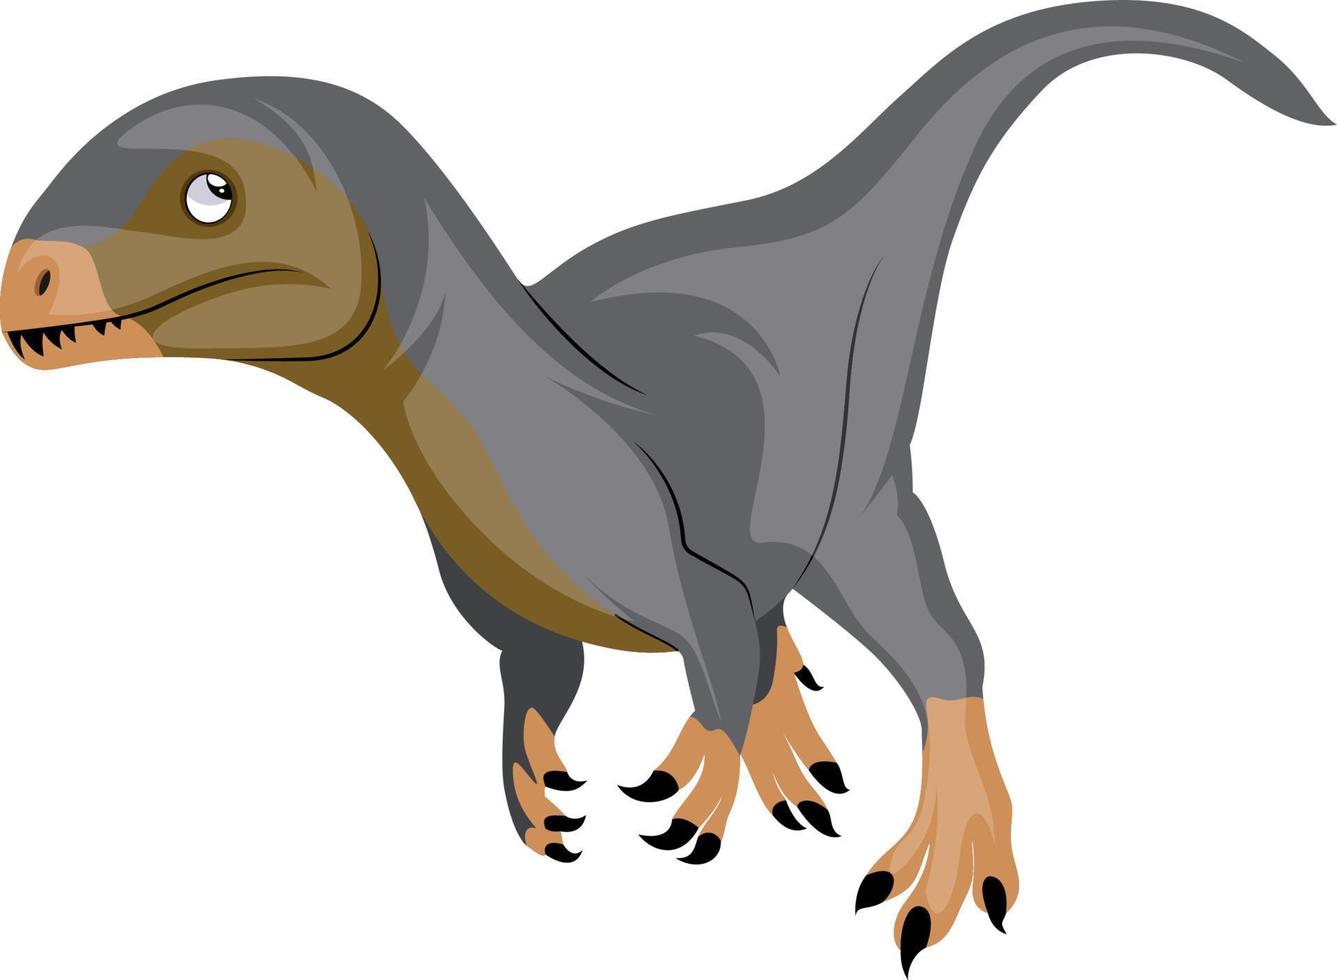 brauner grauer Dinosaurier, Illustration, Vektor auf weißem Hintergrund.